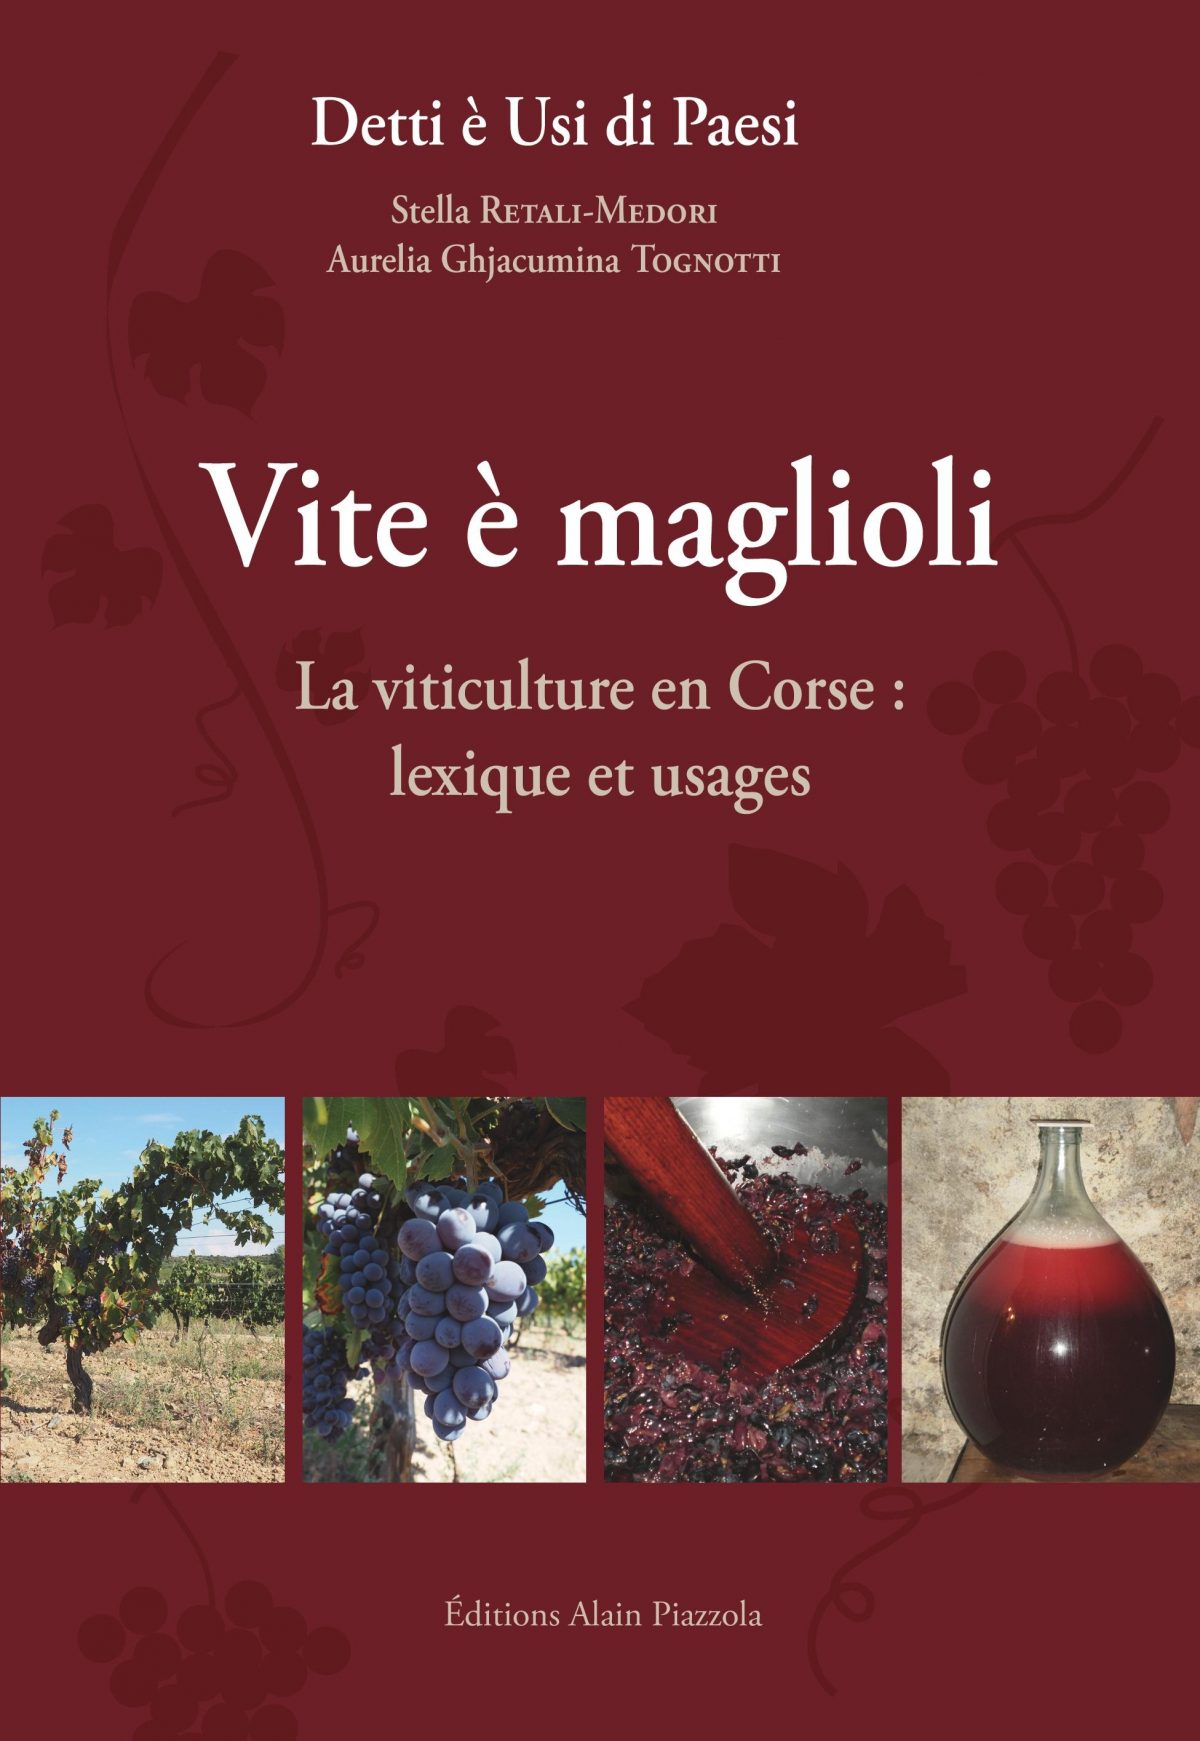 Vite è maglioli, la viticulture en Corse : lexique et usages, Ajaccio : Editions Alain Piazzola, Collection « detti è usi di paesi », 2016.